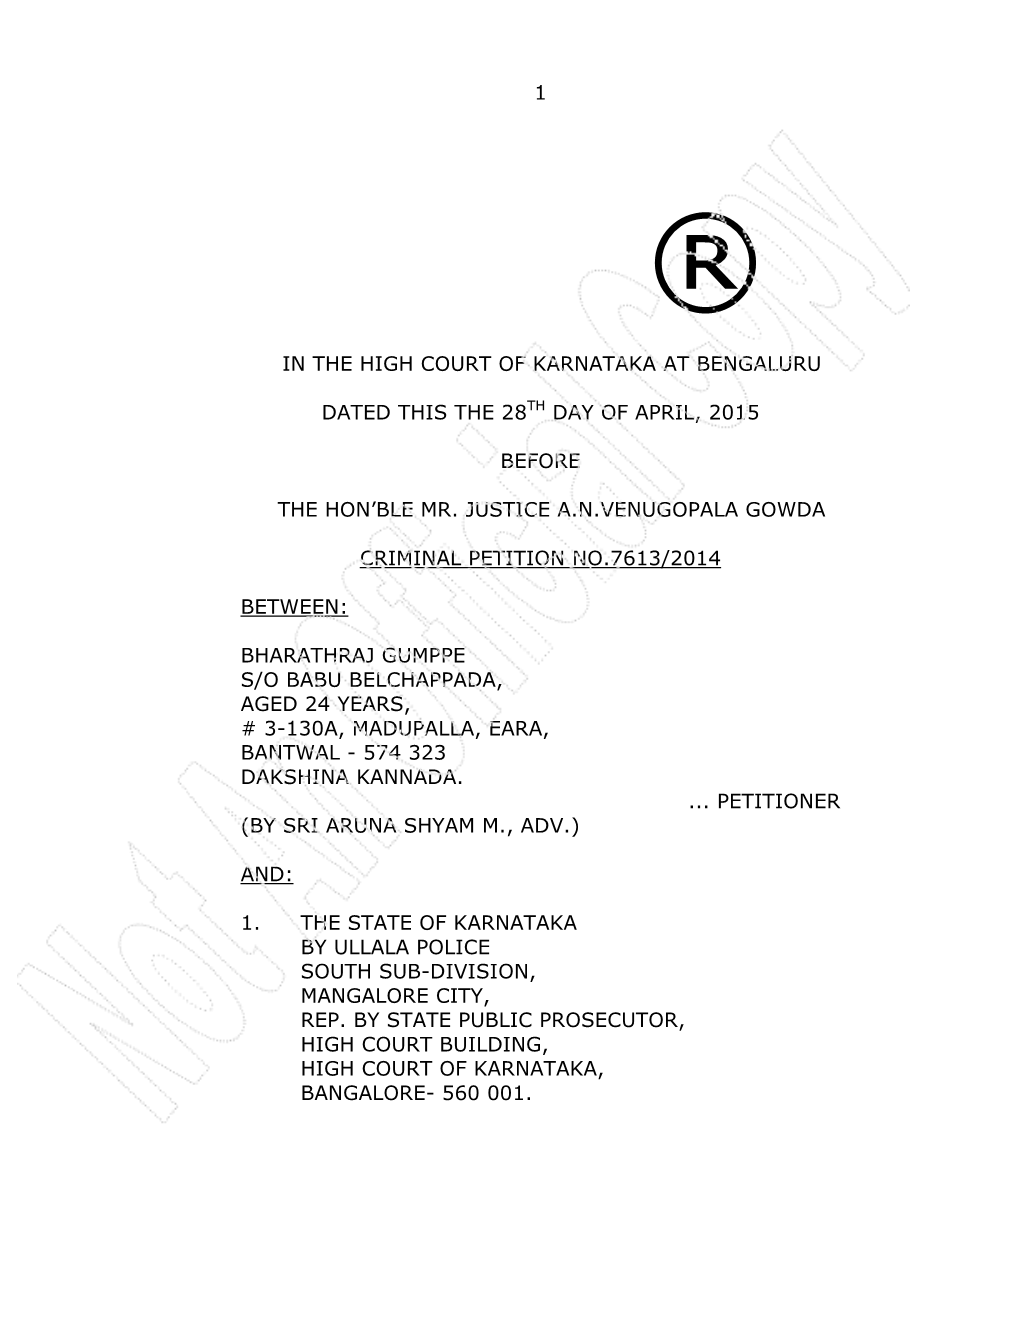 1 in the High Court of Karnataka at Bengaluru